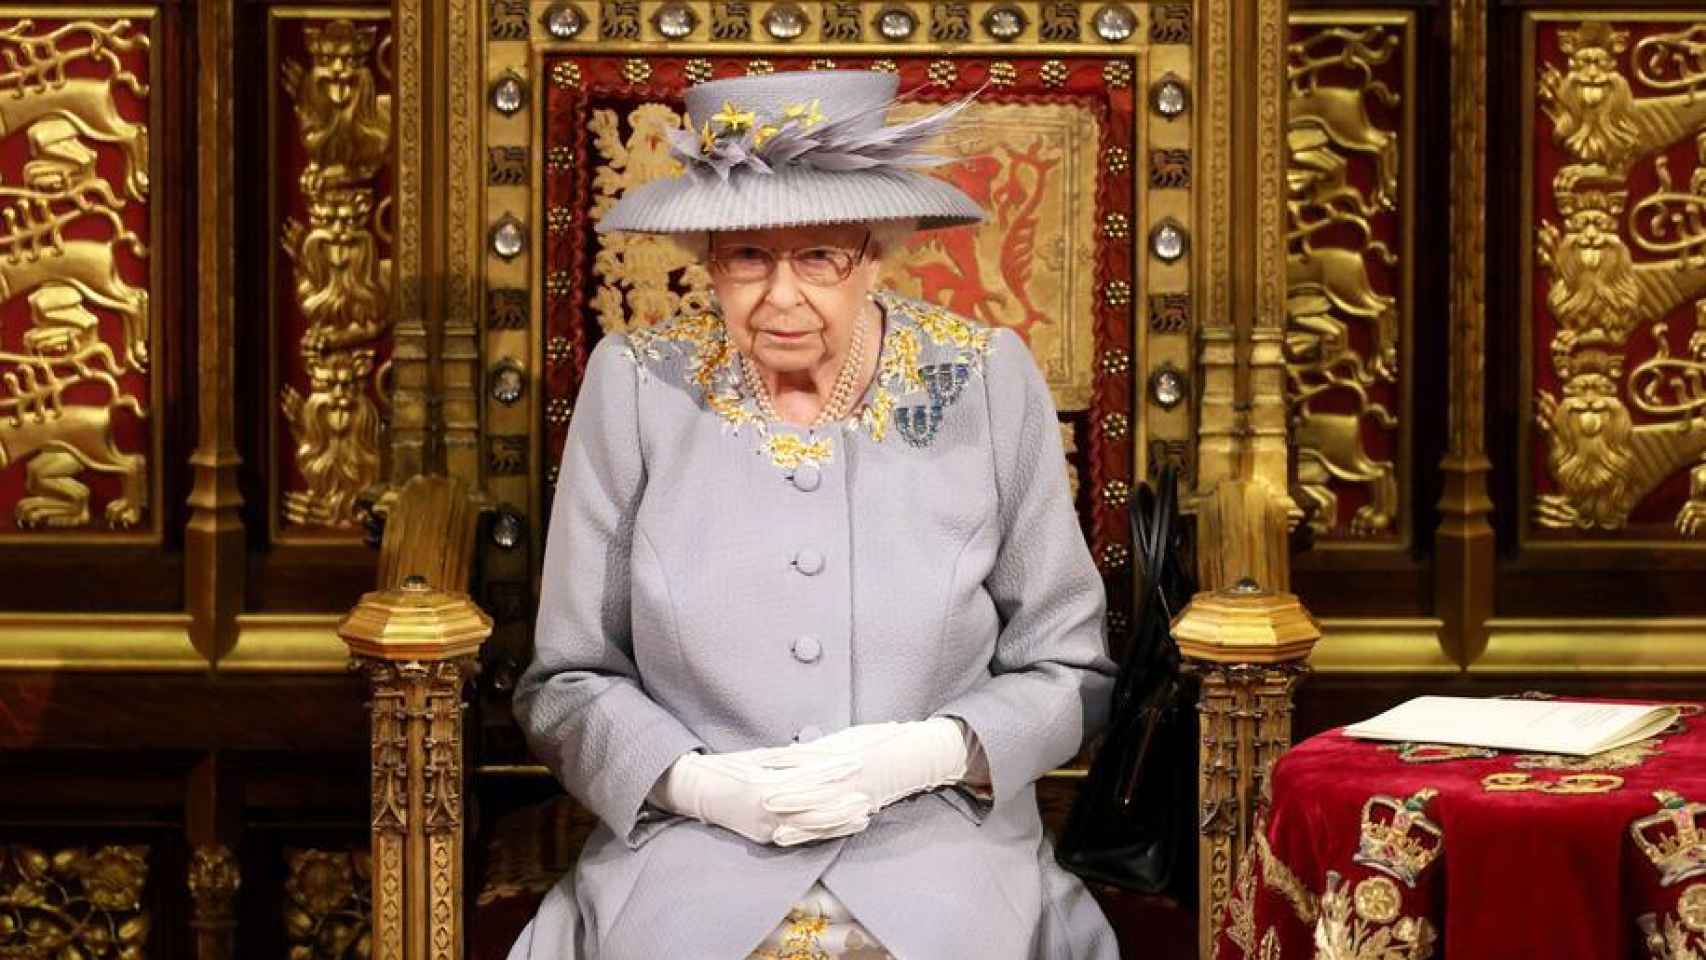 La Reina Isabel II durante su discurso ante la Cámara de los Lores.